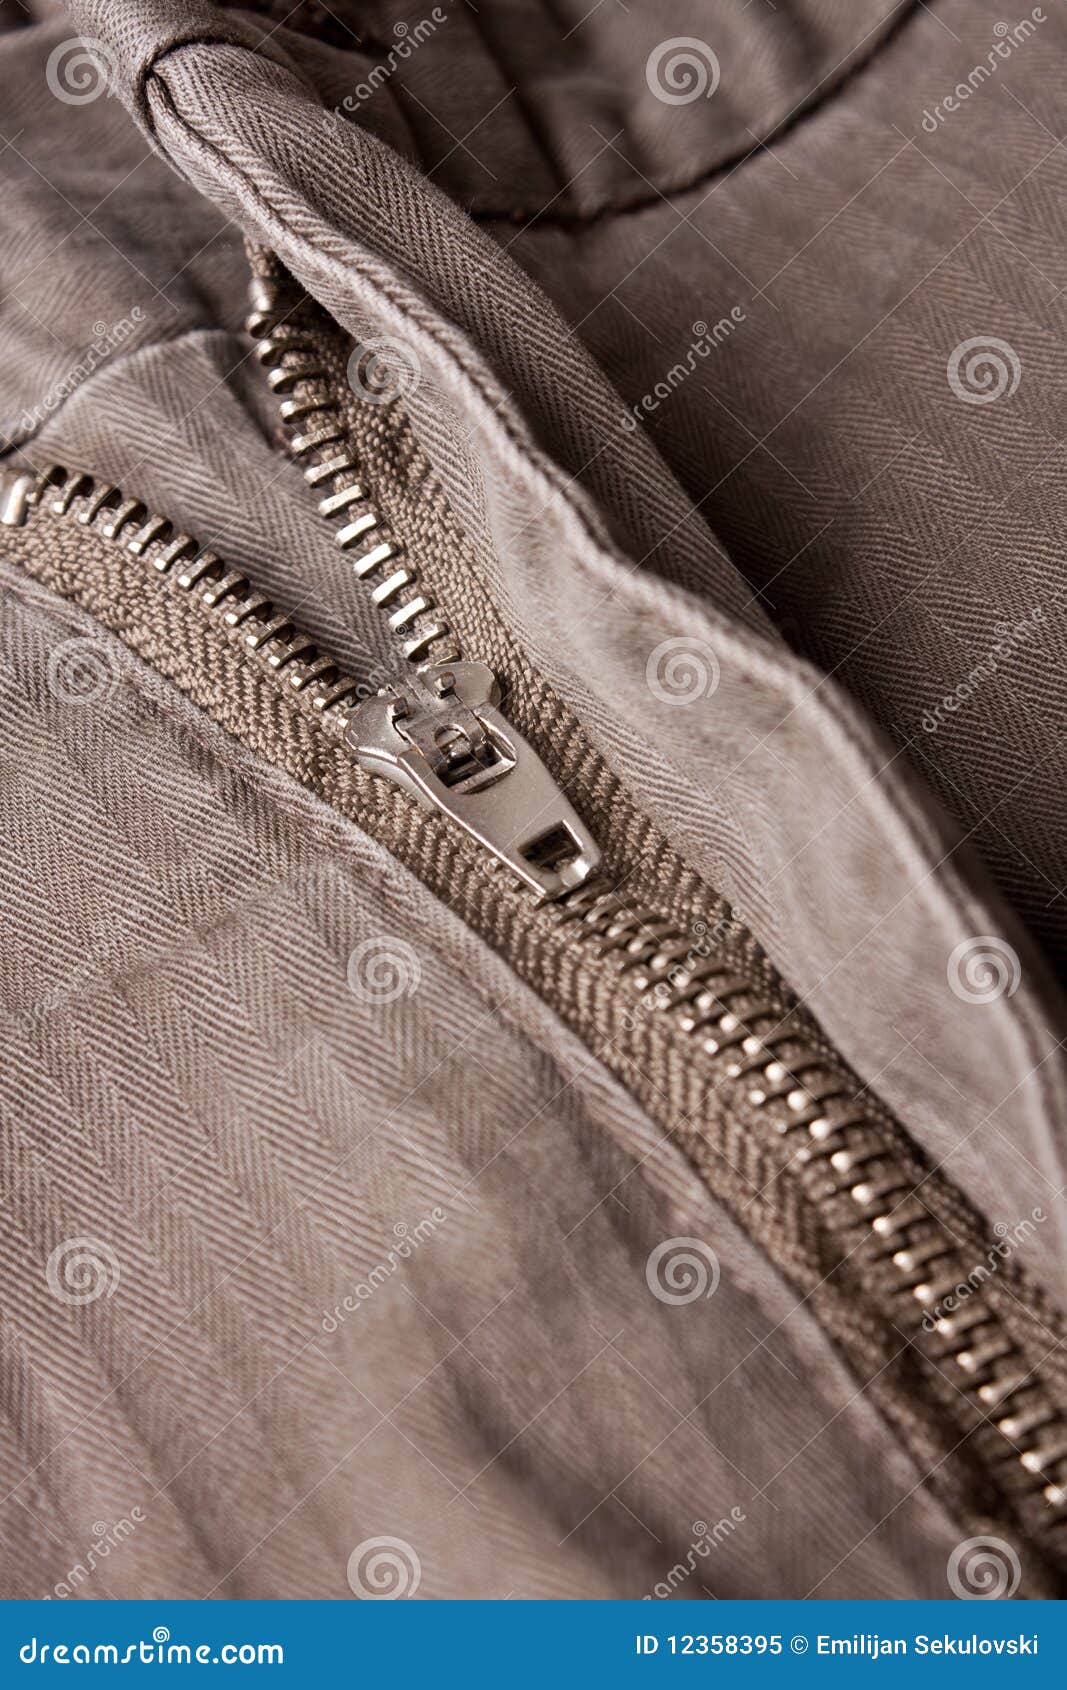 Pants zipper stock image. Image of cotton, color, texture - 12358395